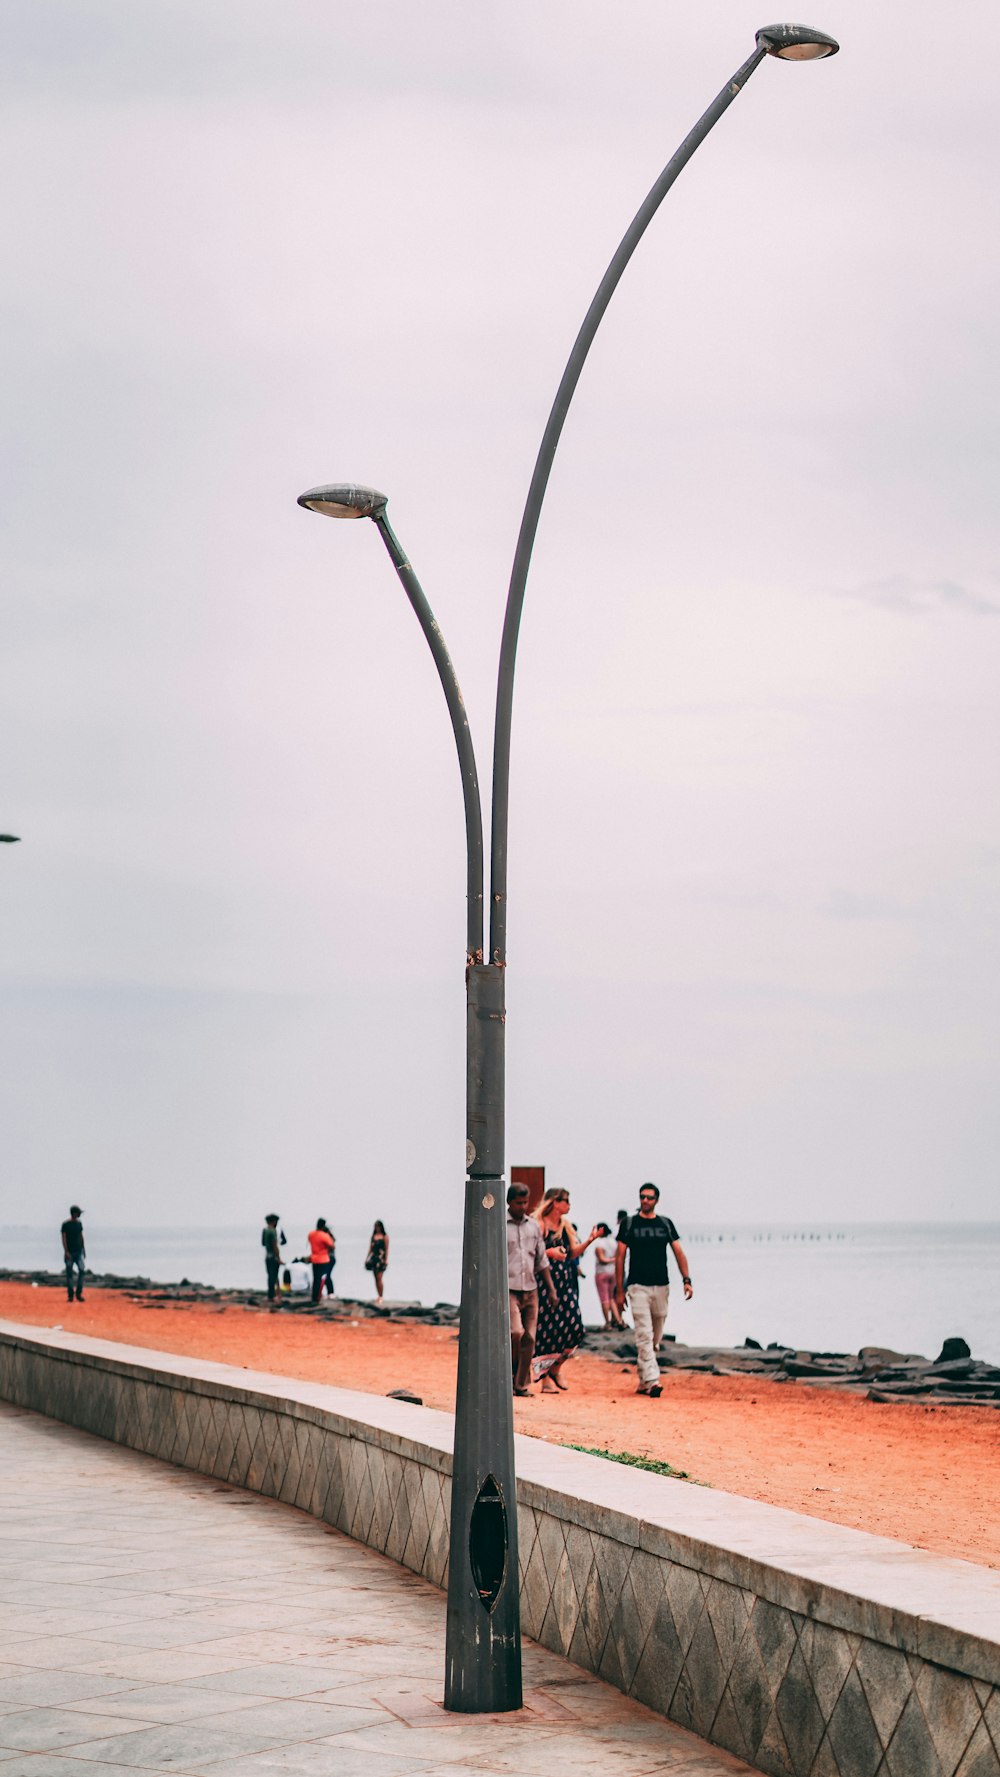 Un grupo de personas caminando por una playa junto a un poste de luz